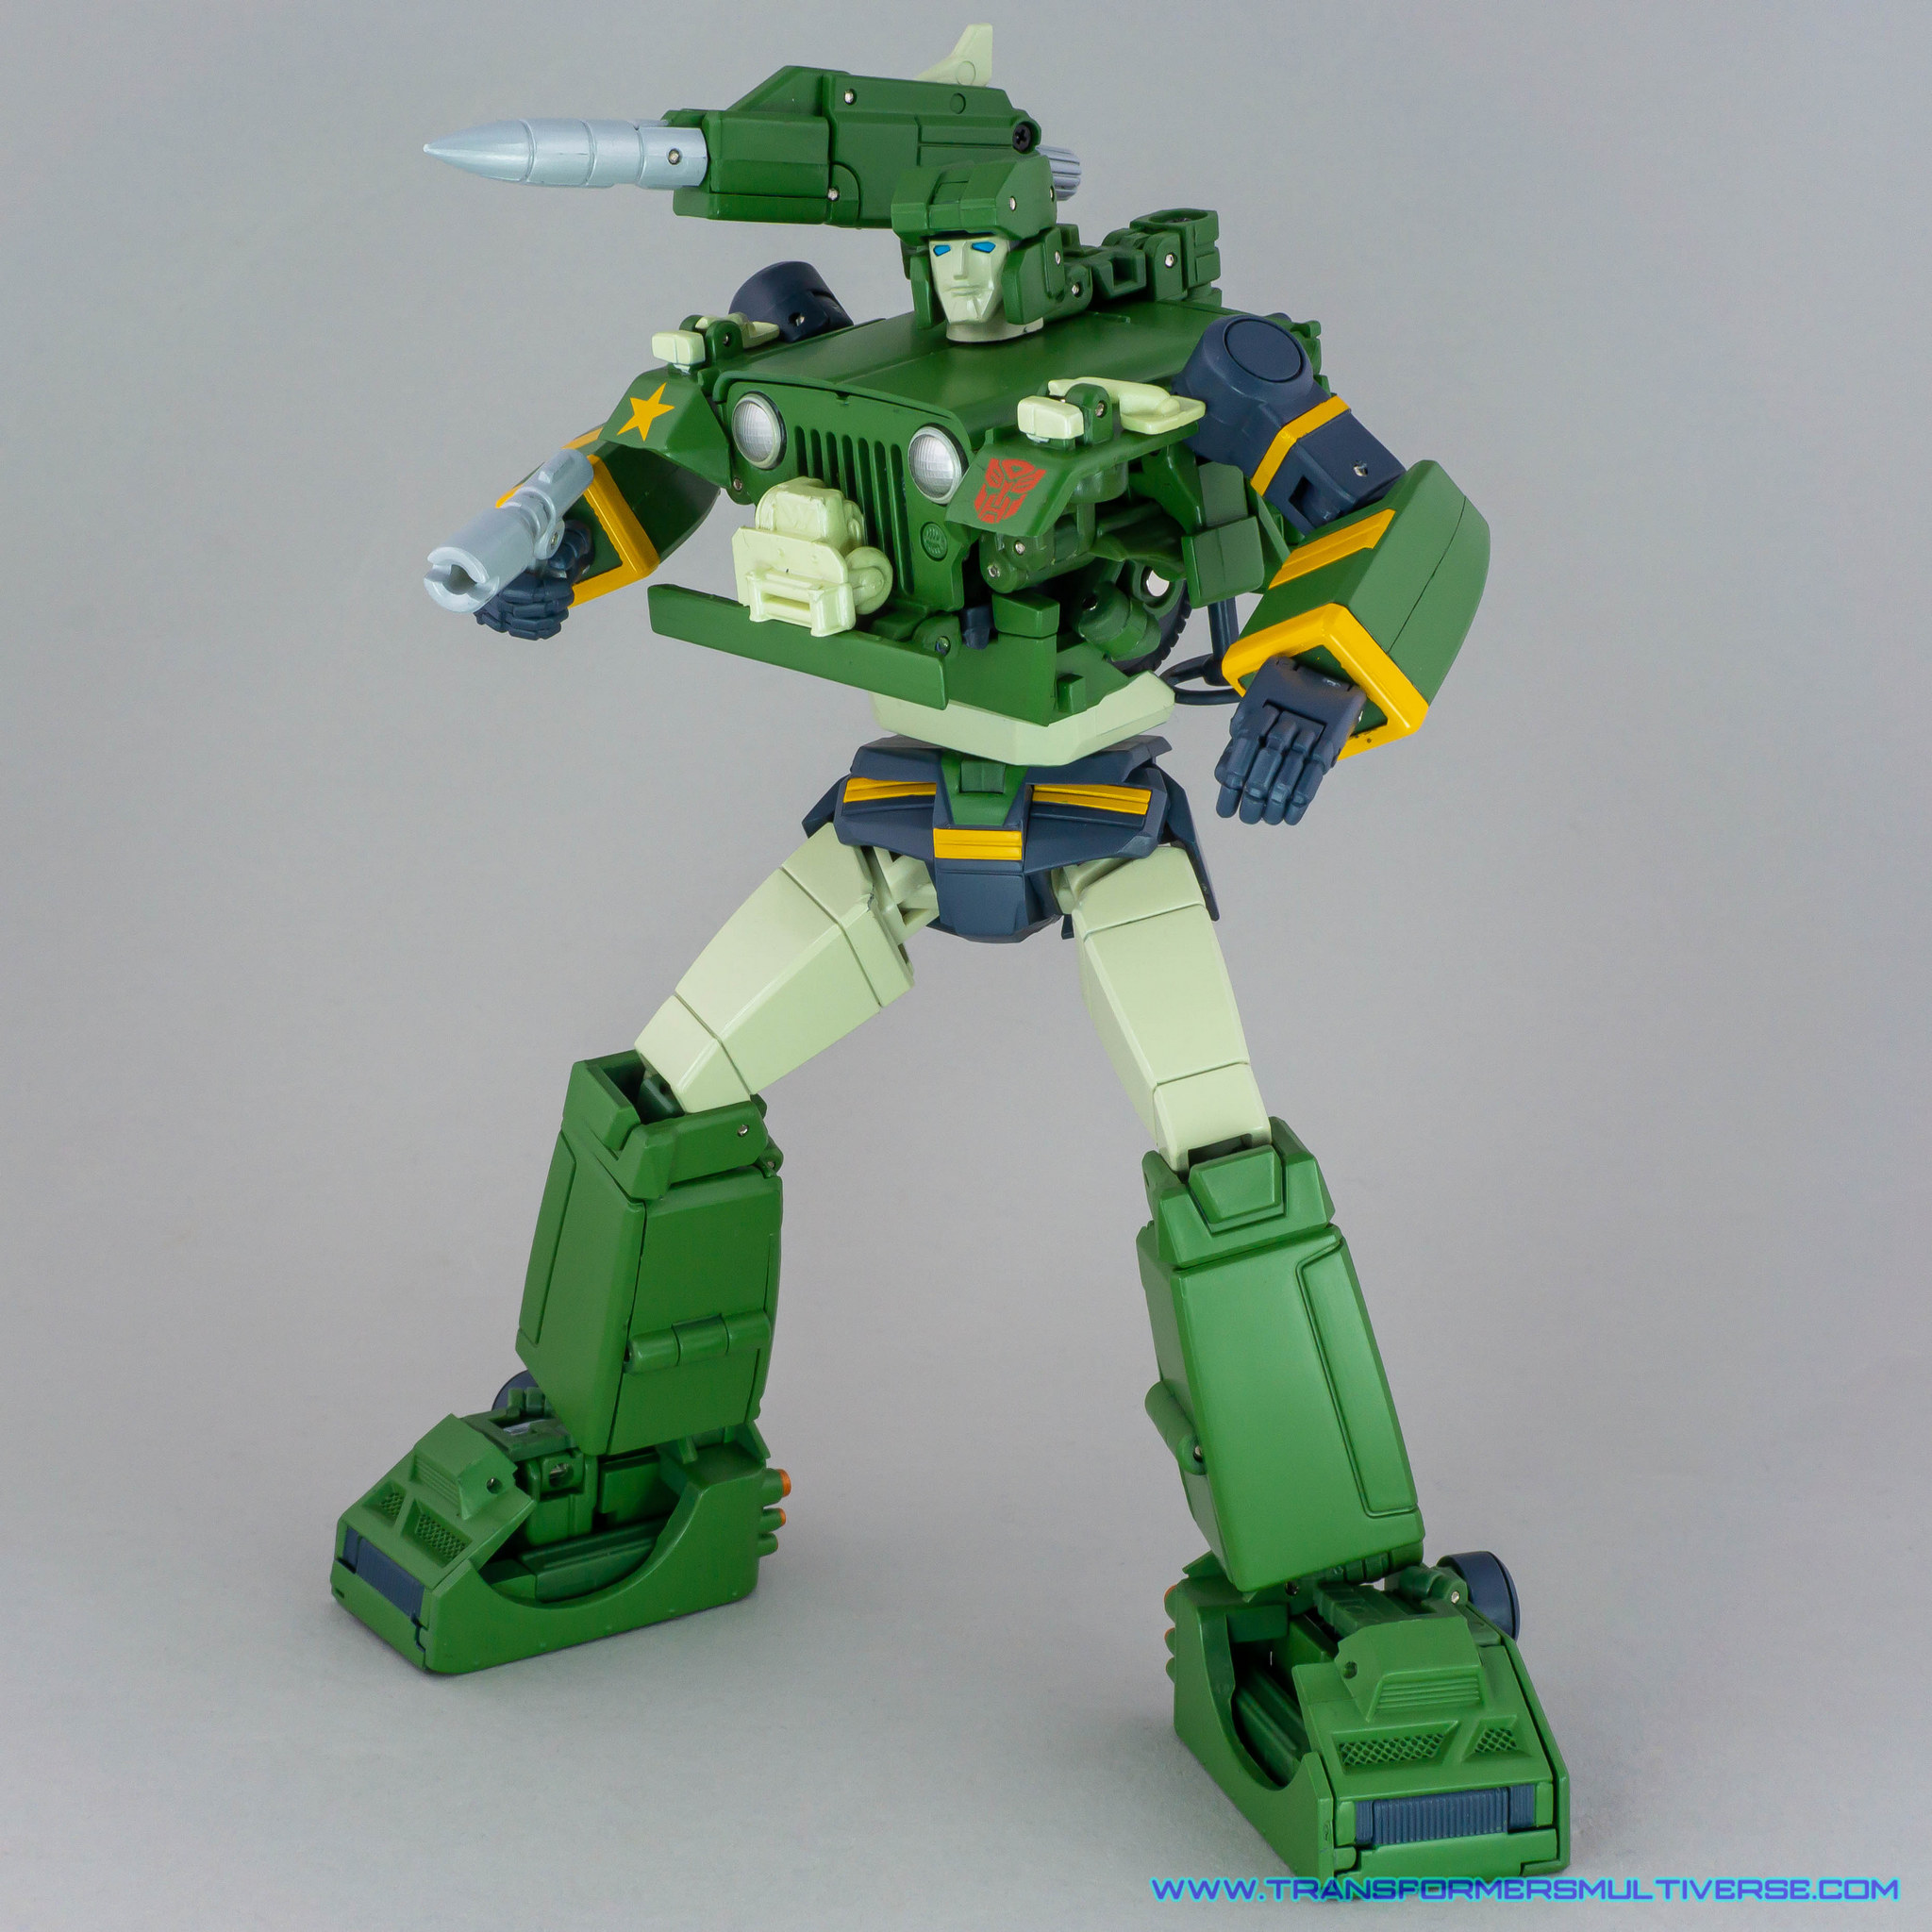 Transformers Masterpiece Hound robot mode